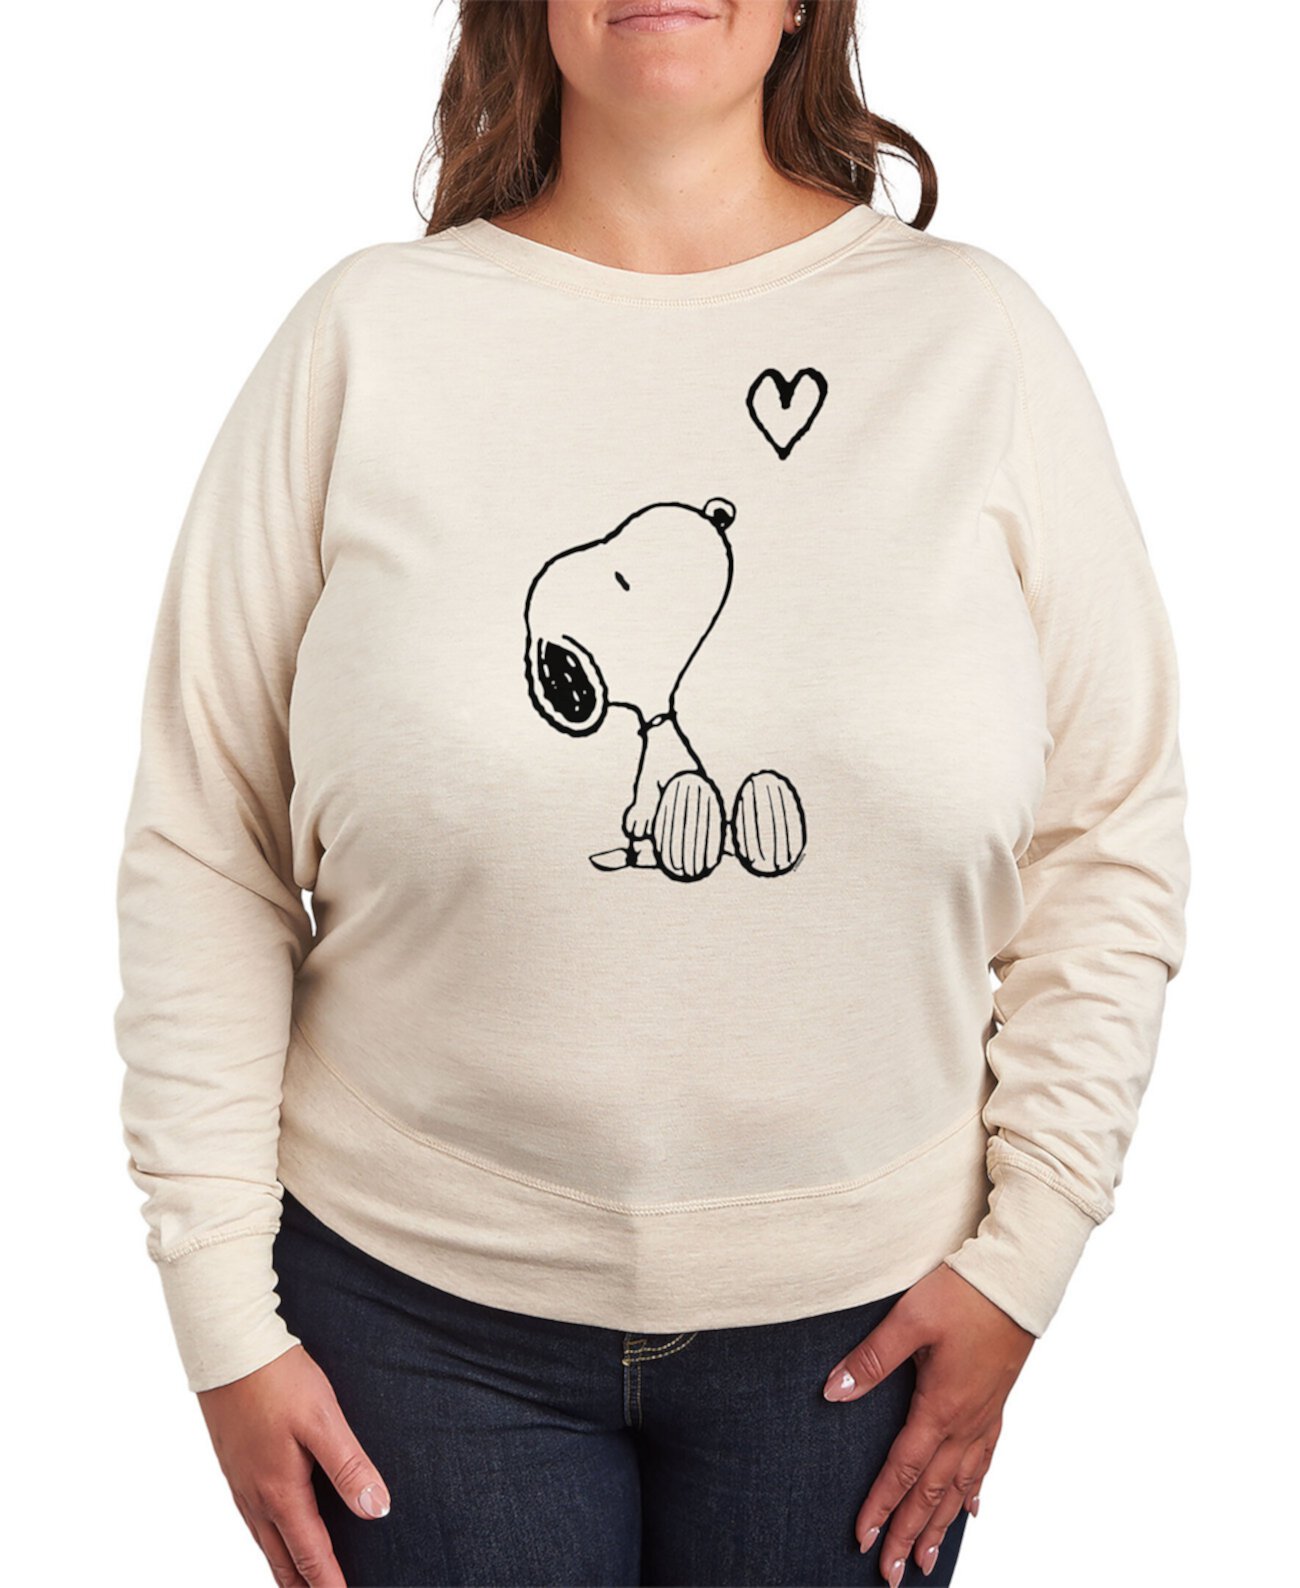 Модный пуловер большого размера с длинными рукавами и графическим принтом Snoopy Top Hybrid Apparel